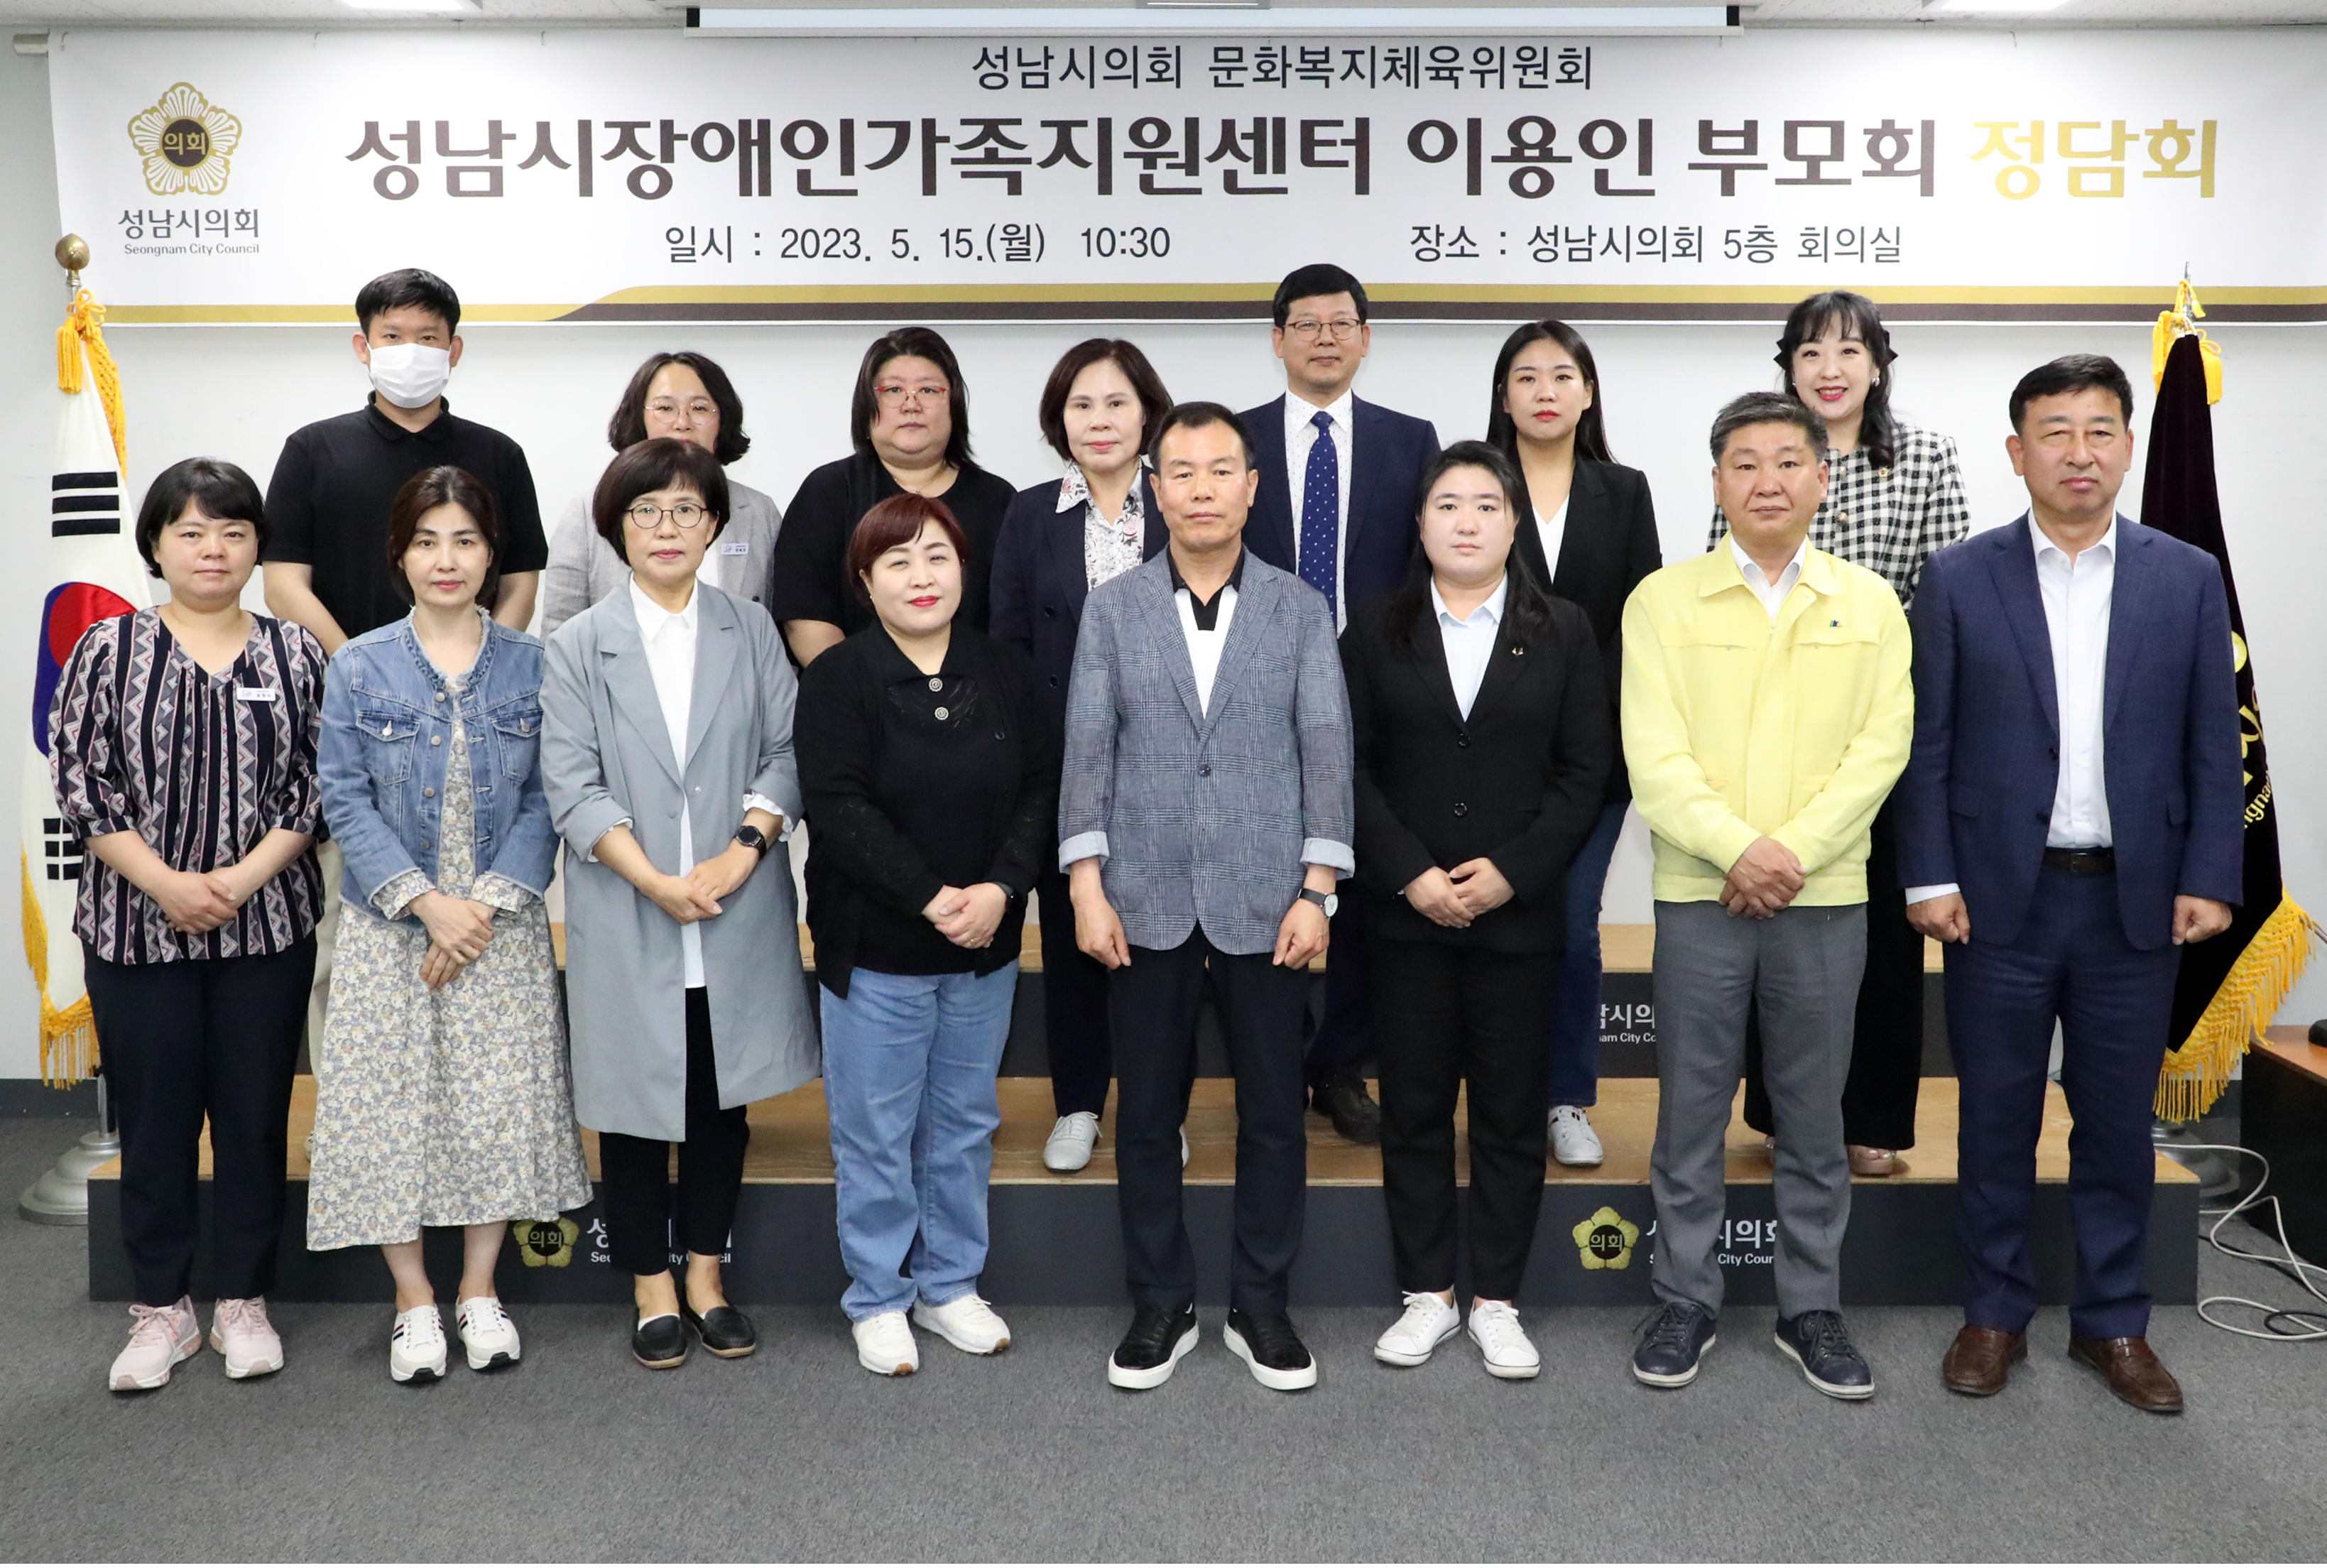 문화복지쳬육위원회 성남시 장애인가족지원센터 이용인 부모회 정담회 - 2